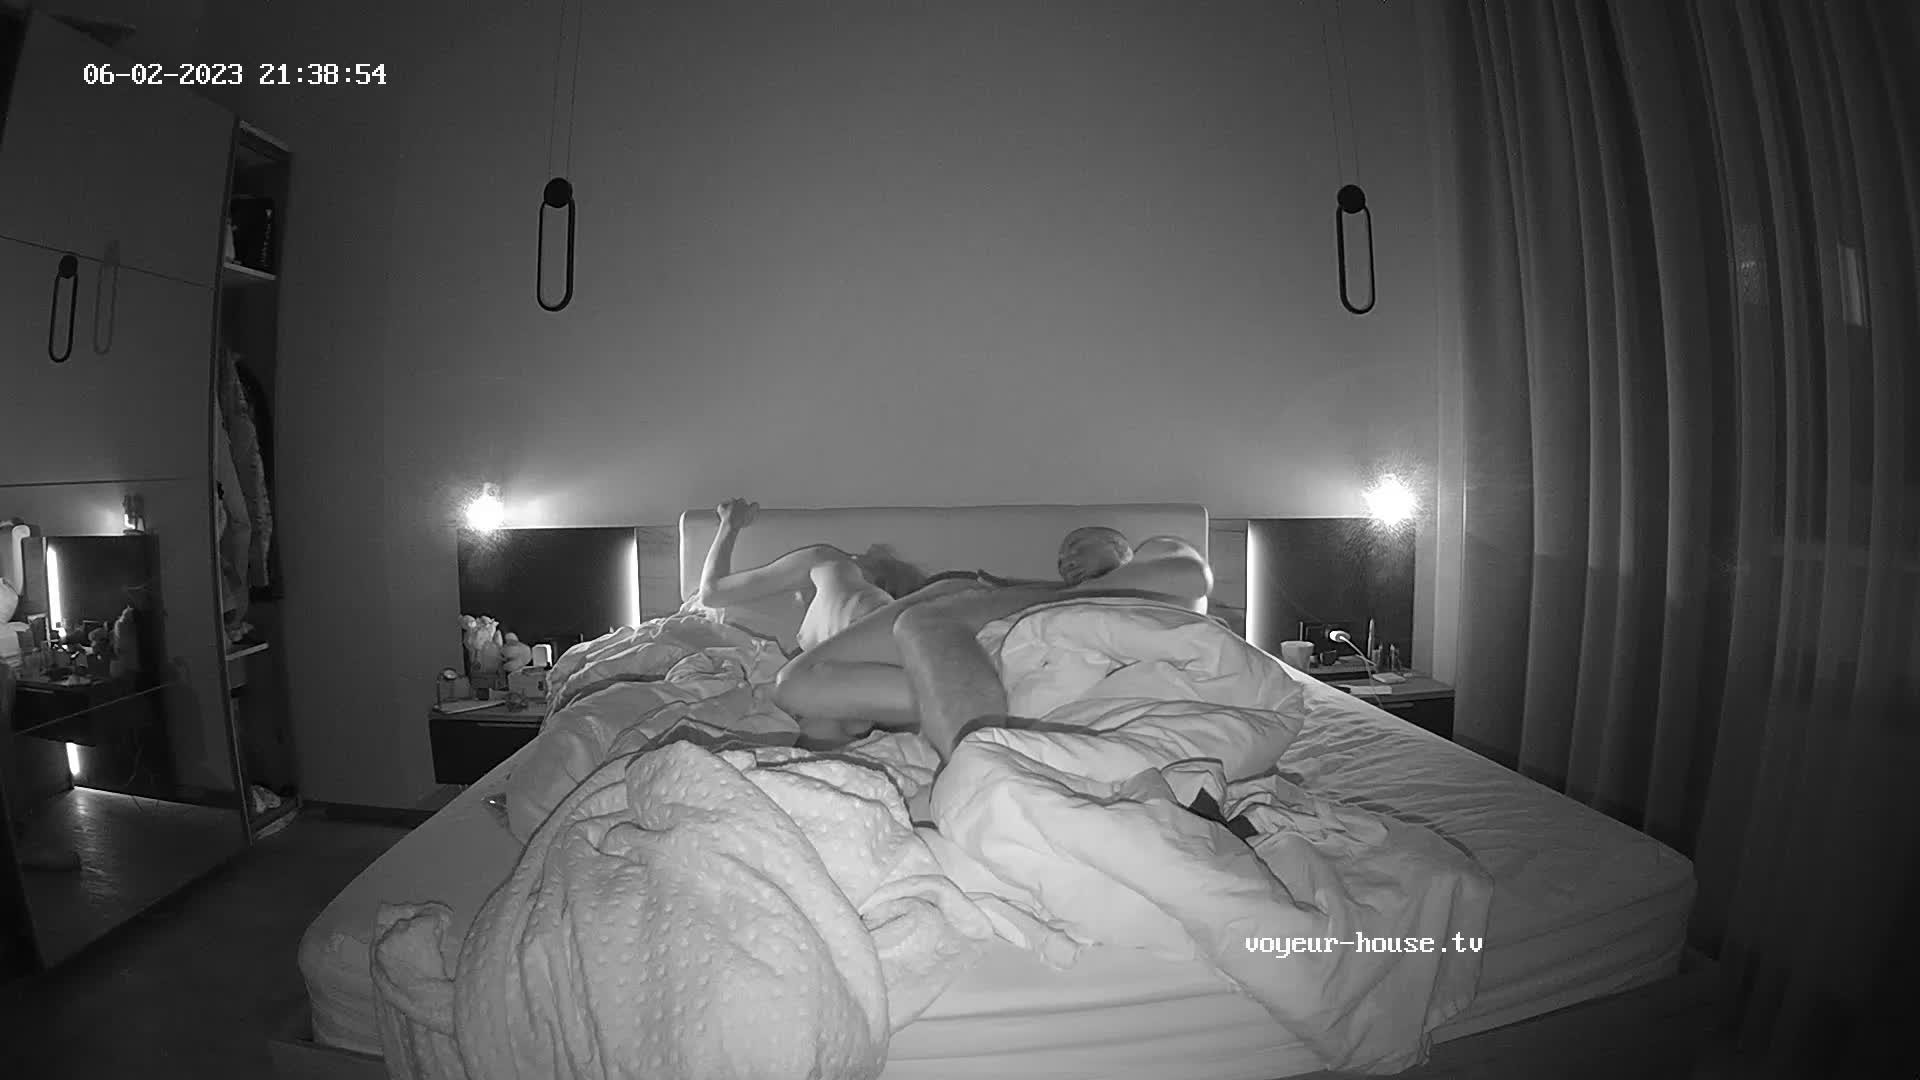 Amelie & Lucas bedroom sex, Jun-02-2023